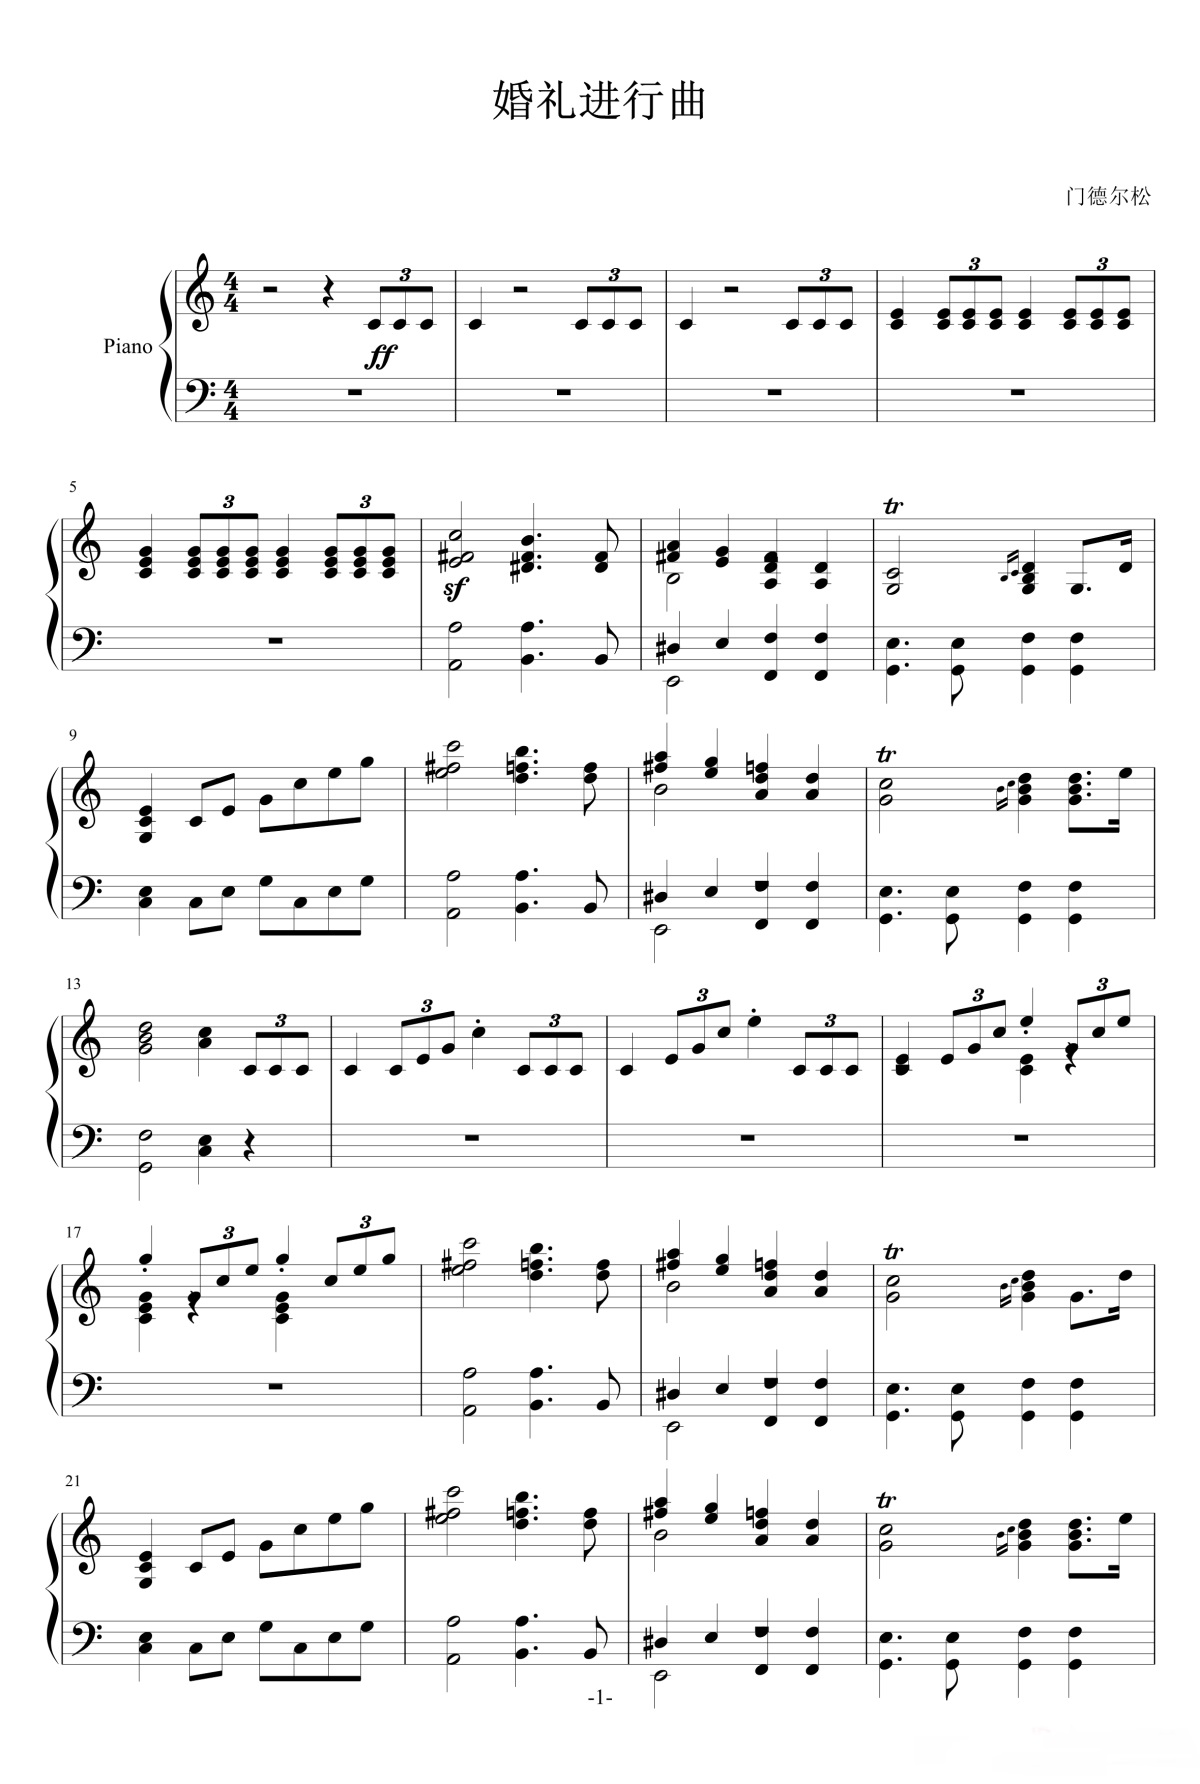 【婚礼进行曲】的钢琴谱简谱 – 门德尔松